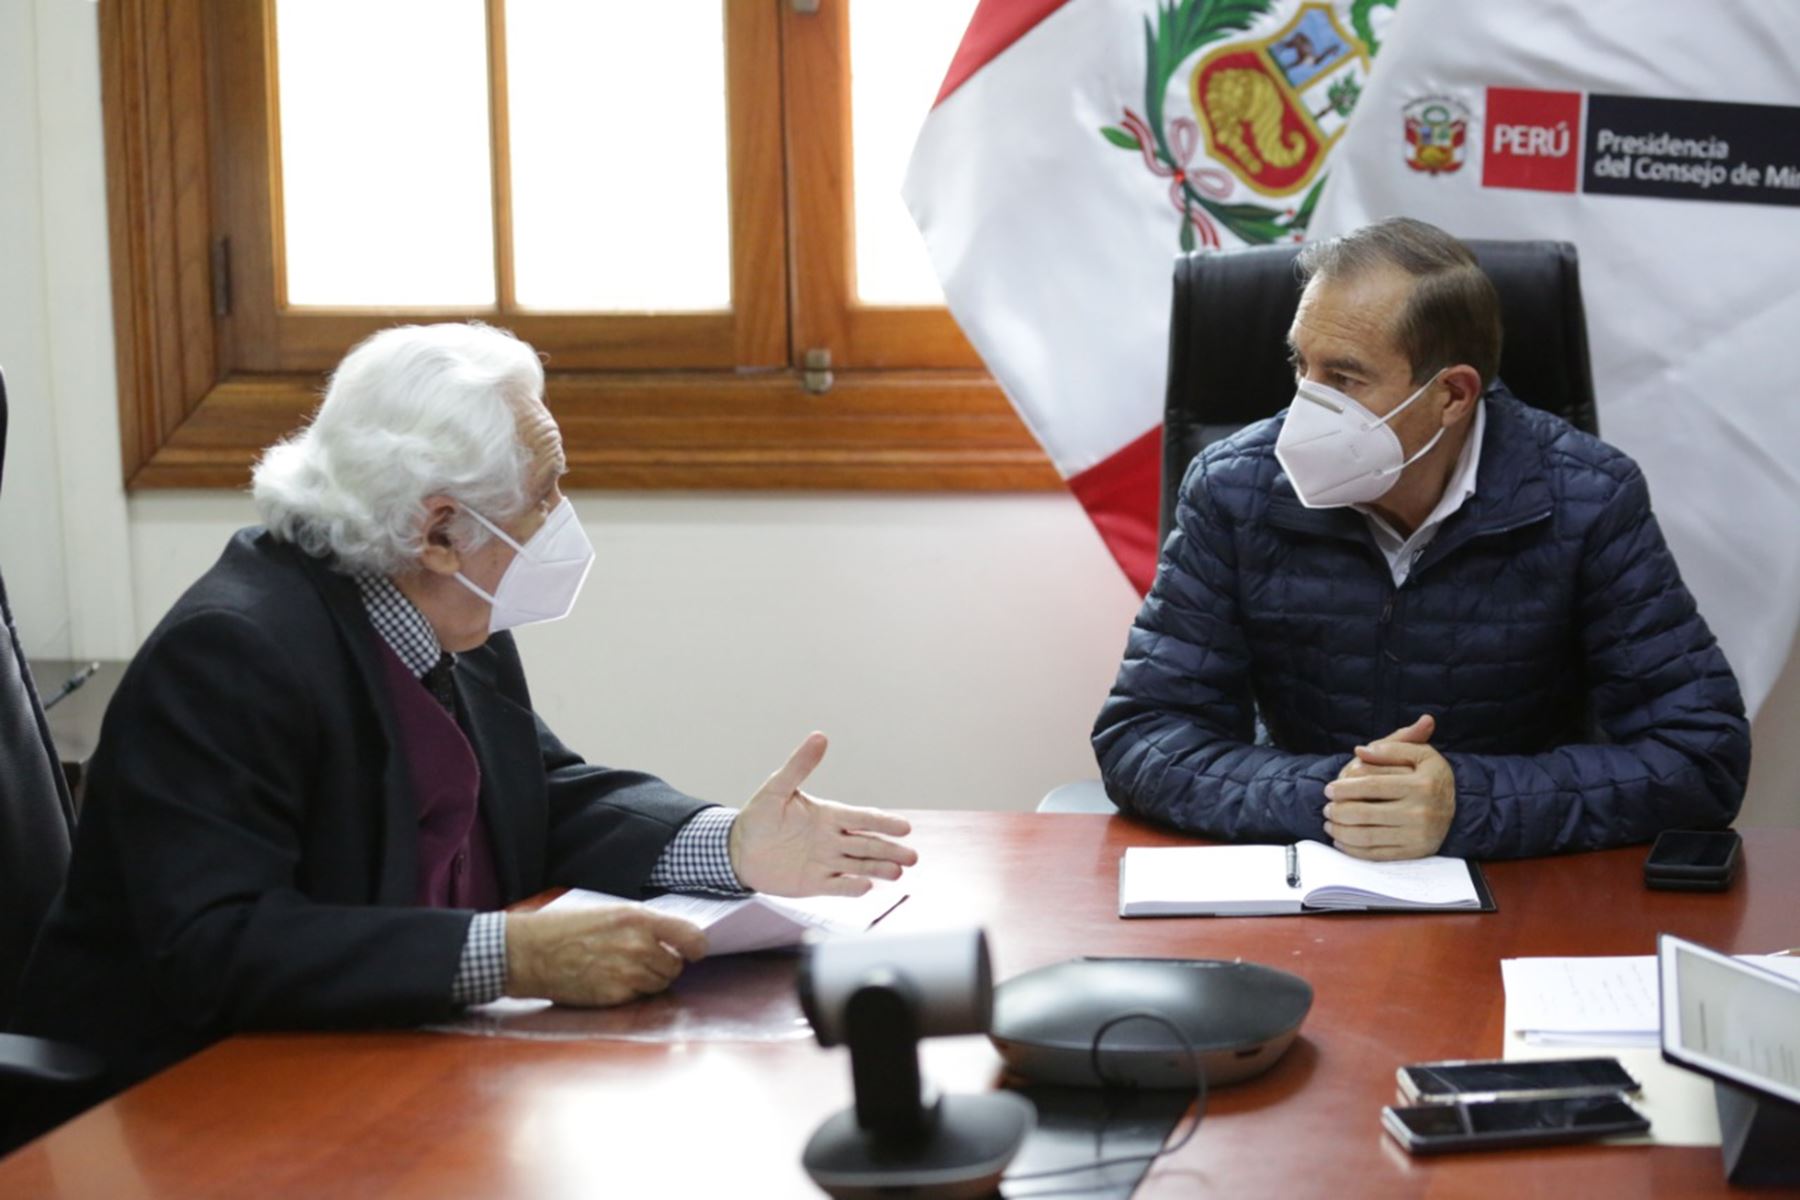 El jefe del Gabinete Ministerial, Walter Martos, sostuvo una reunión con el secretario ejecutivo del Acuerdo Nacional, Max Hernández, con el objetivo de coordinar aspectos relacionados a la convocatoria del denominado Pacto Perú.
Foto: PCM